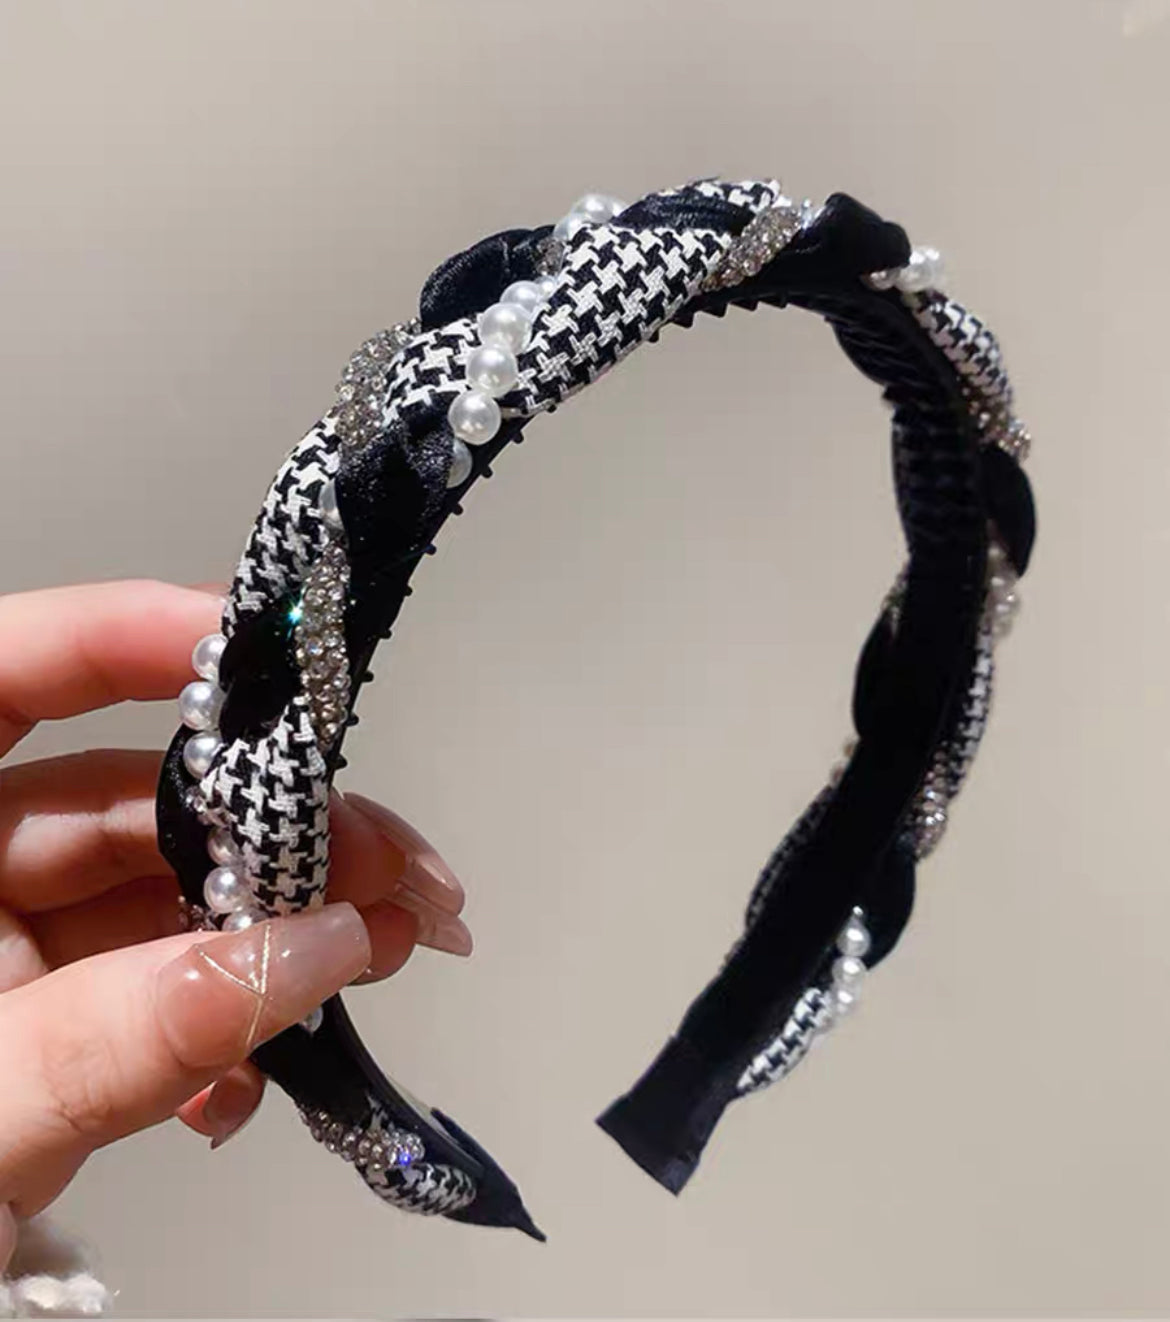 韓式人工髮箍- 珍珠髮箍 (黑色/啡色)